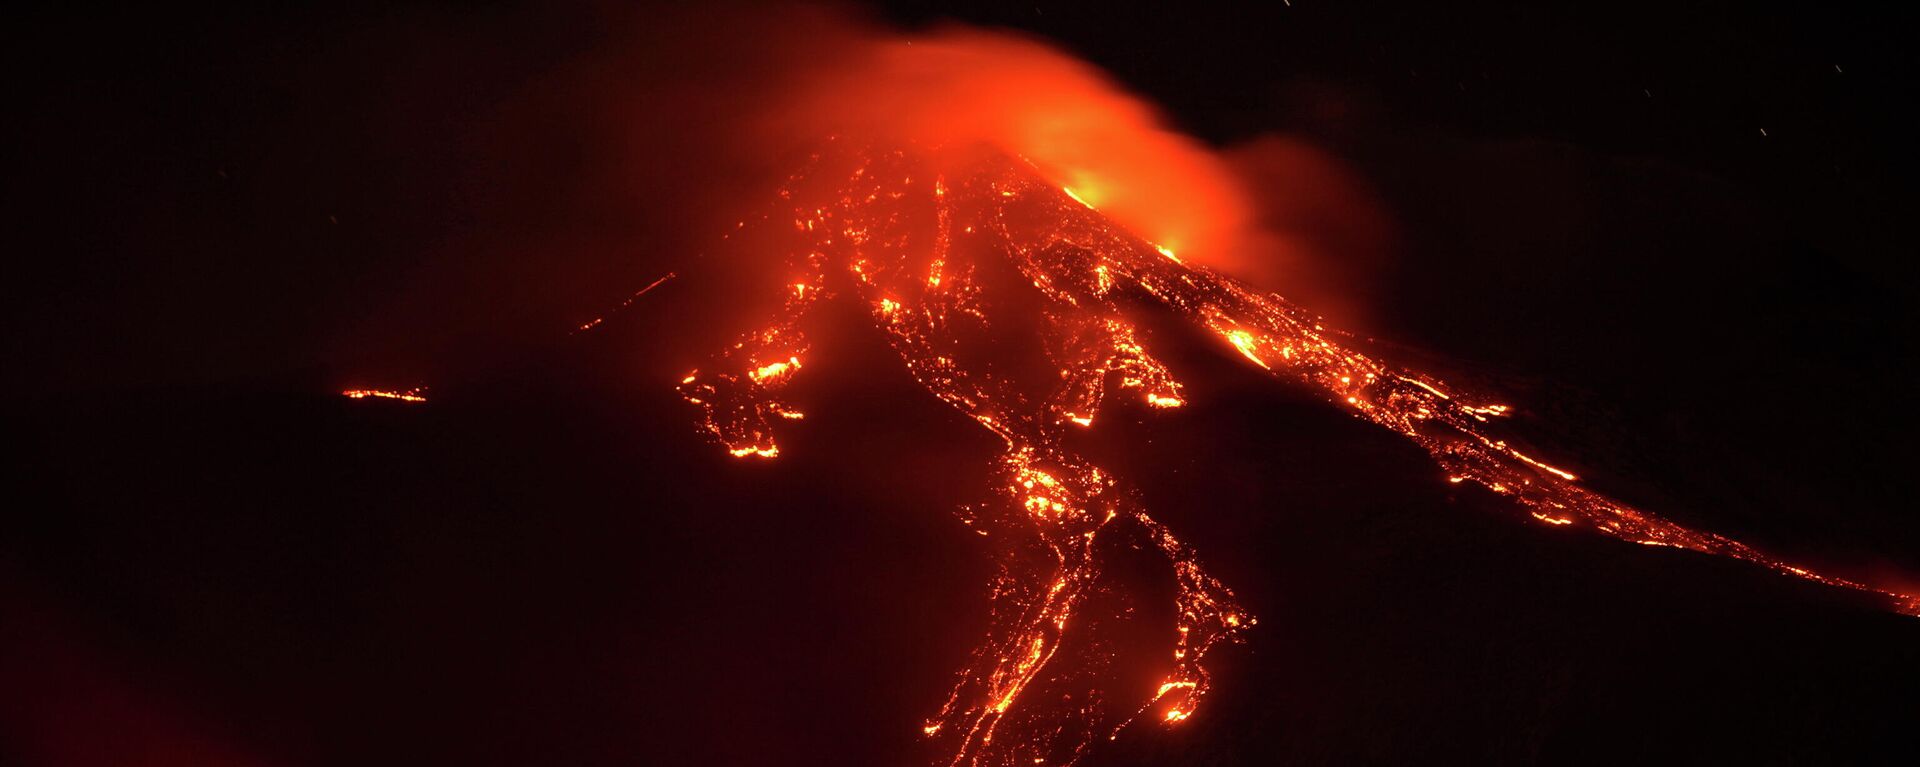 El flujo de lava durante una erupción del monte Etna el 16 de febrero de 2021 - Sputnik Mundo, 1920, 07.03.2021